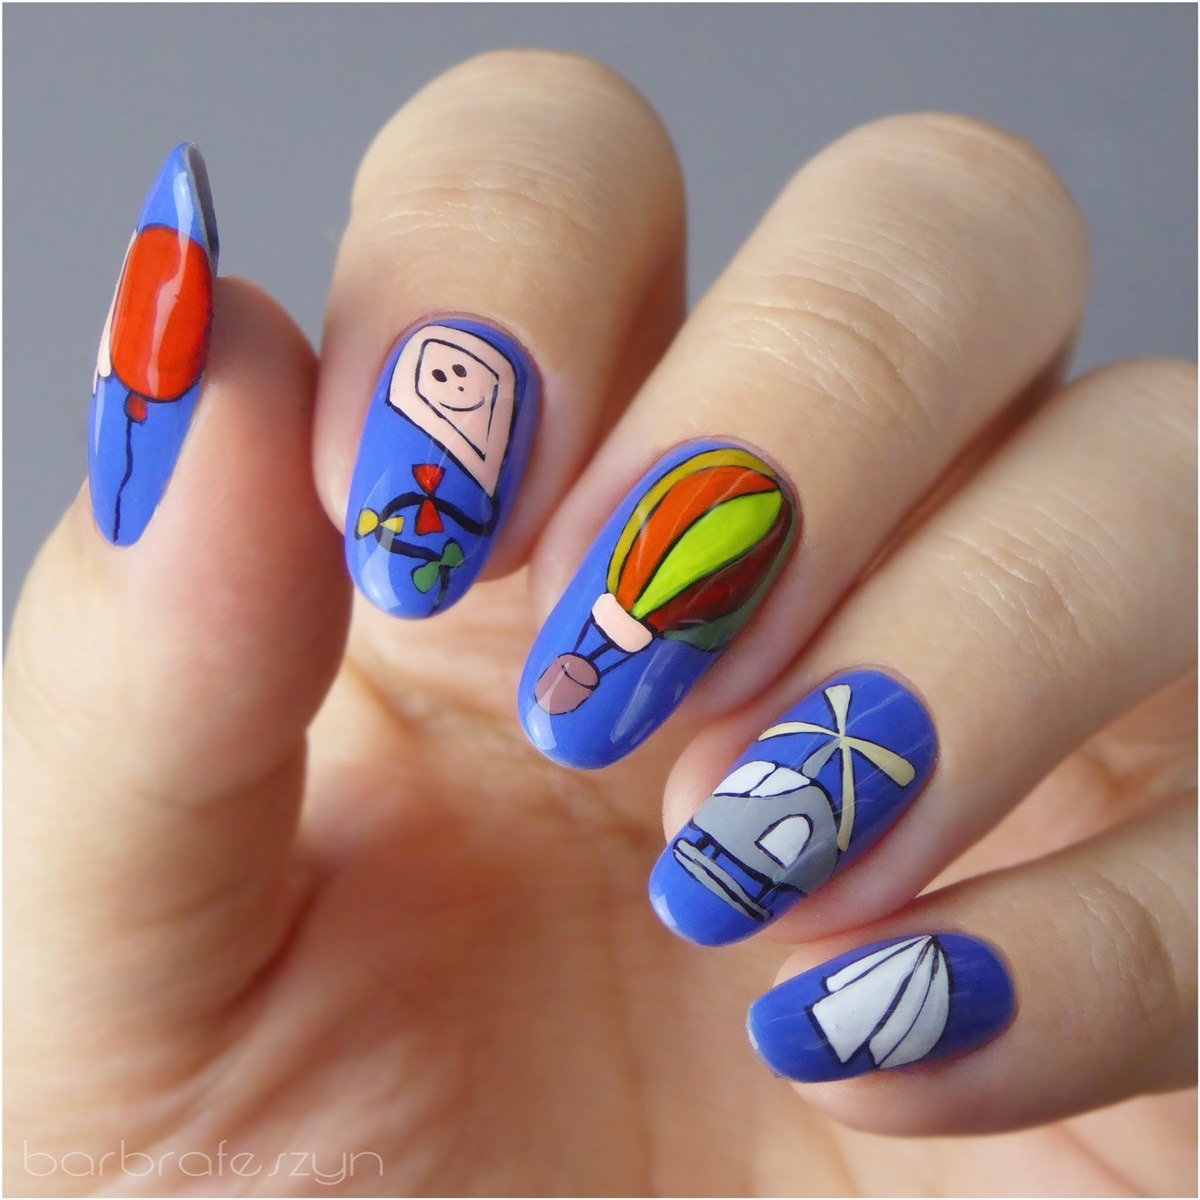 barbrafeszyn zdobienie paznokci icon nails wzory ręcznie malowane